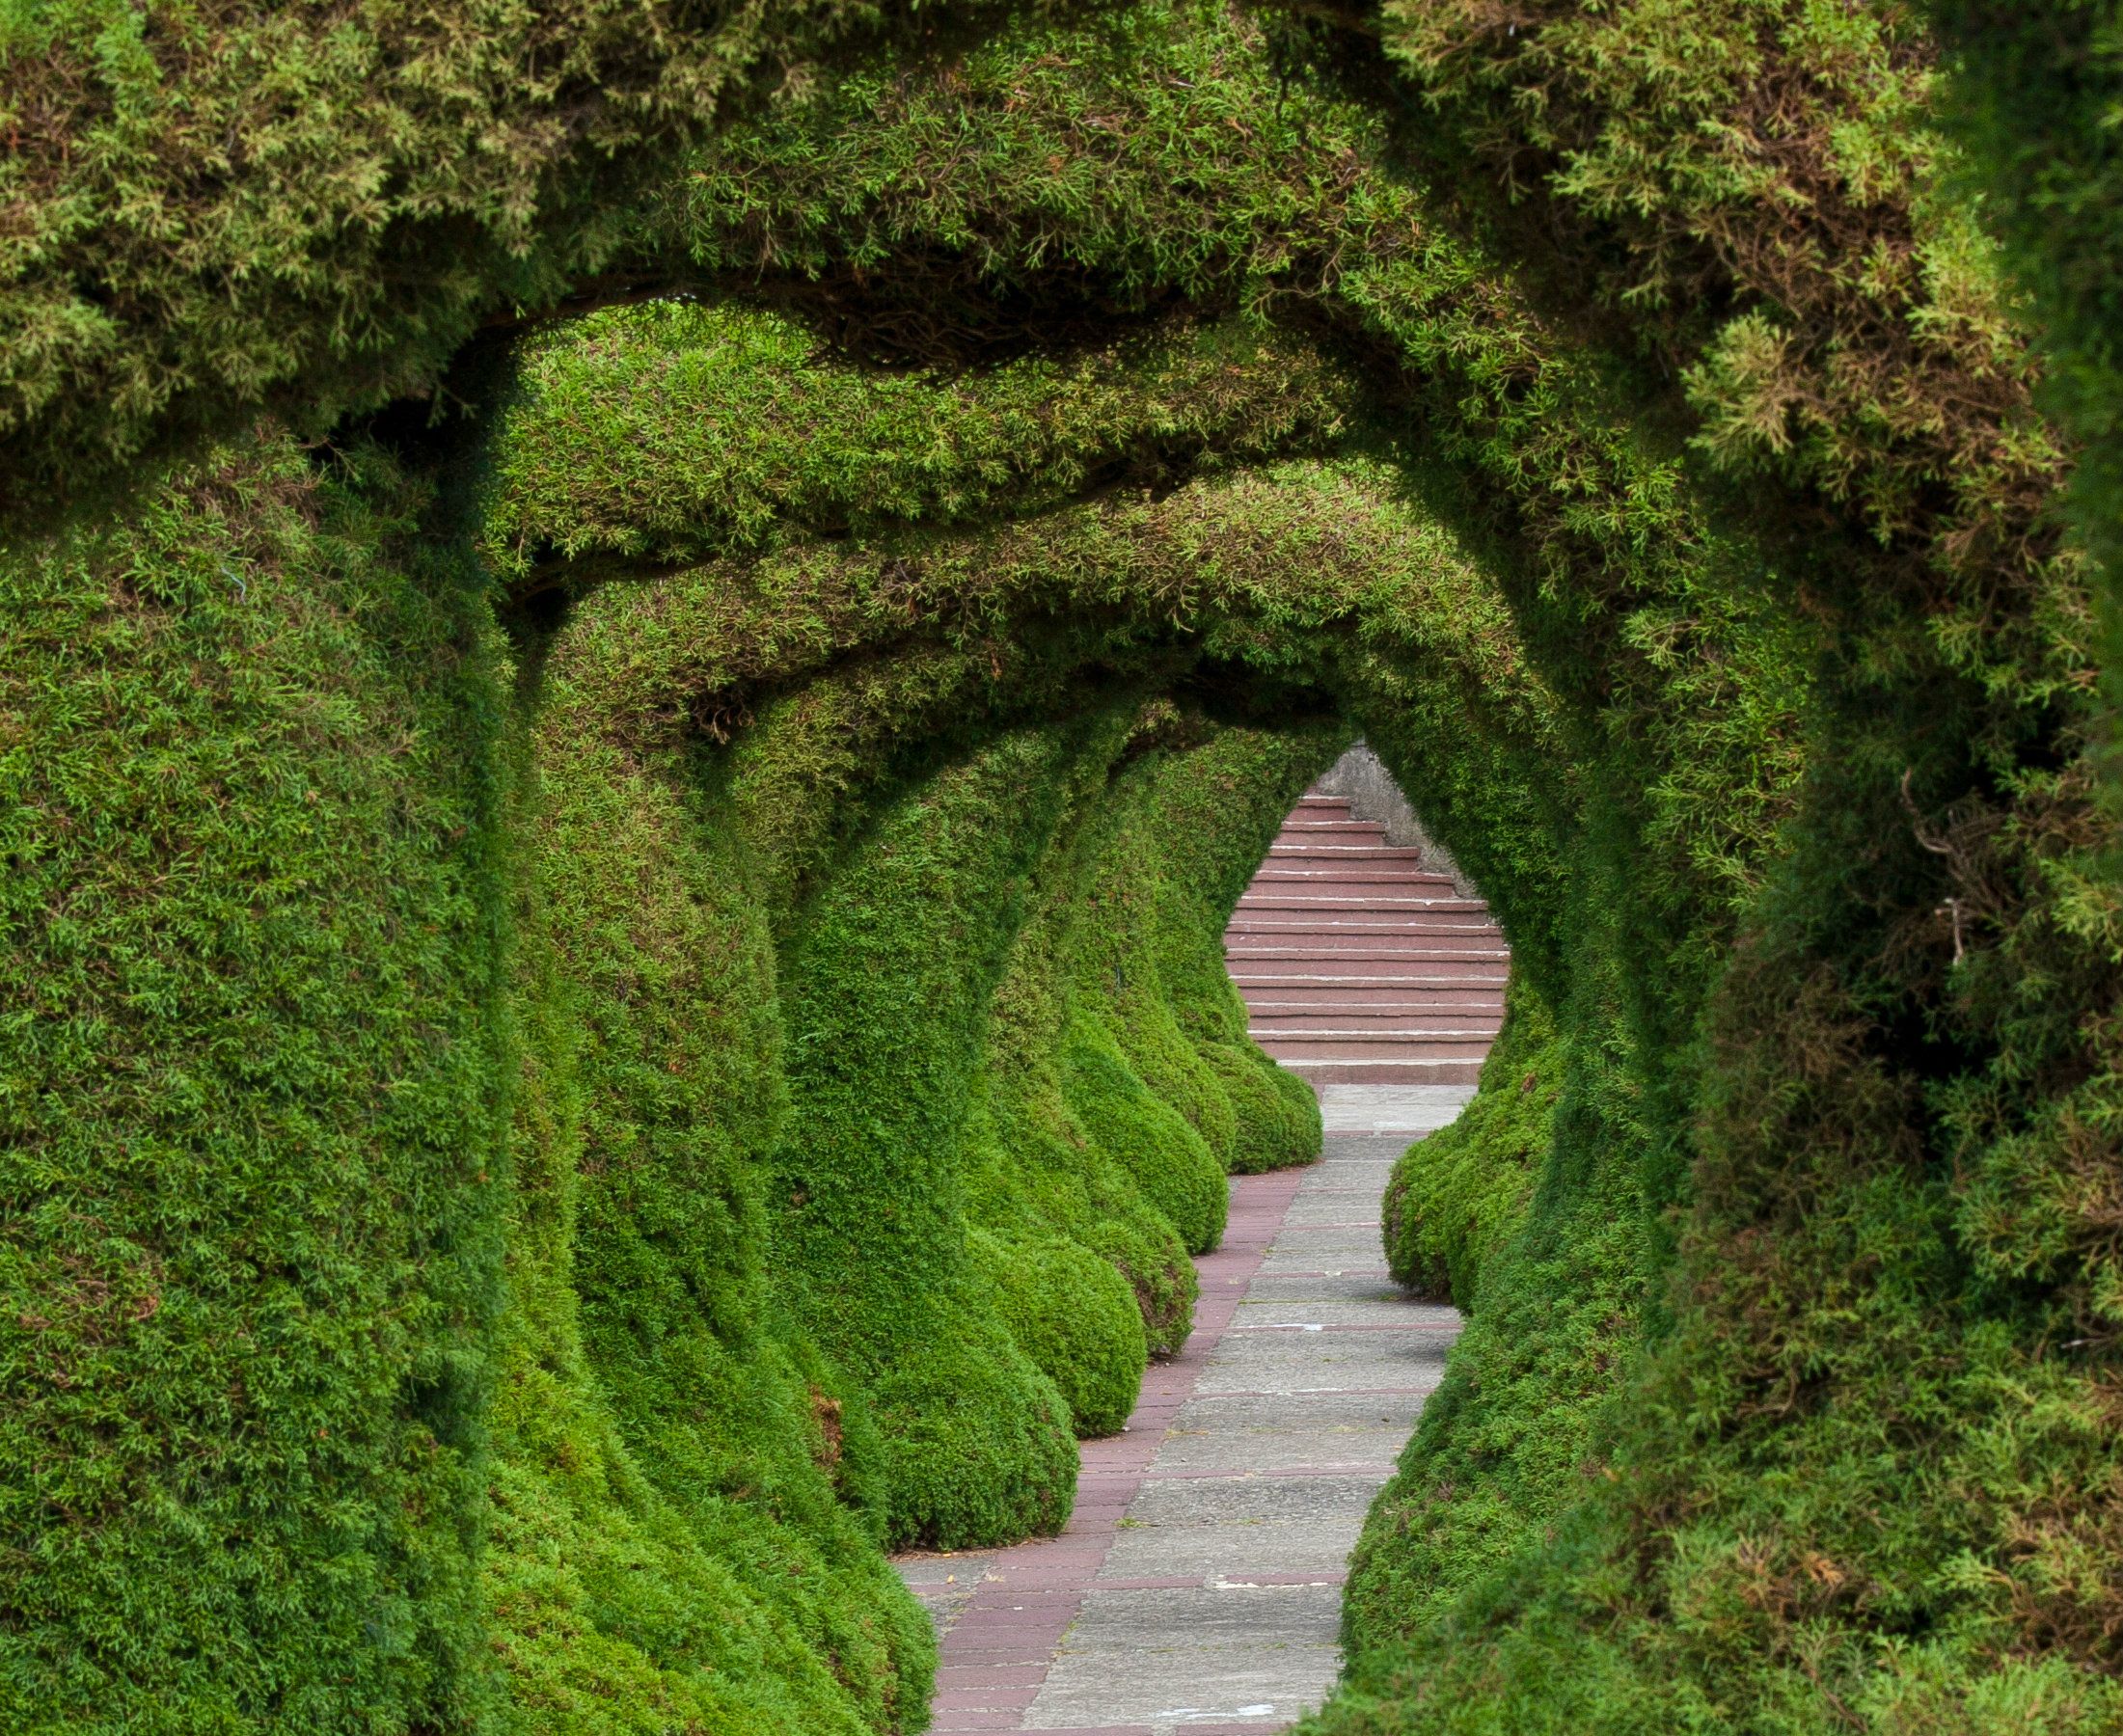 بهترین عکس از تونل سبز گیاهی مخصوص پست و استوری